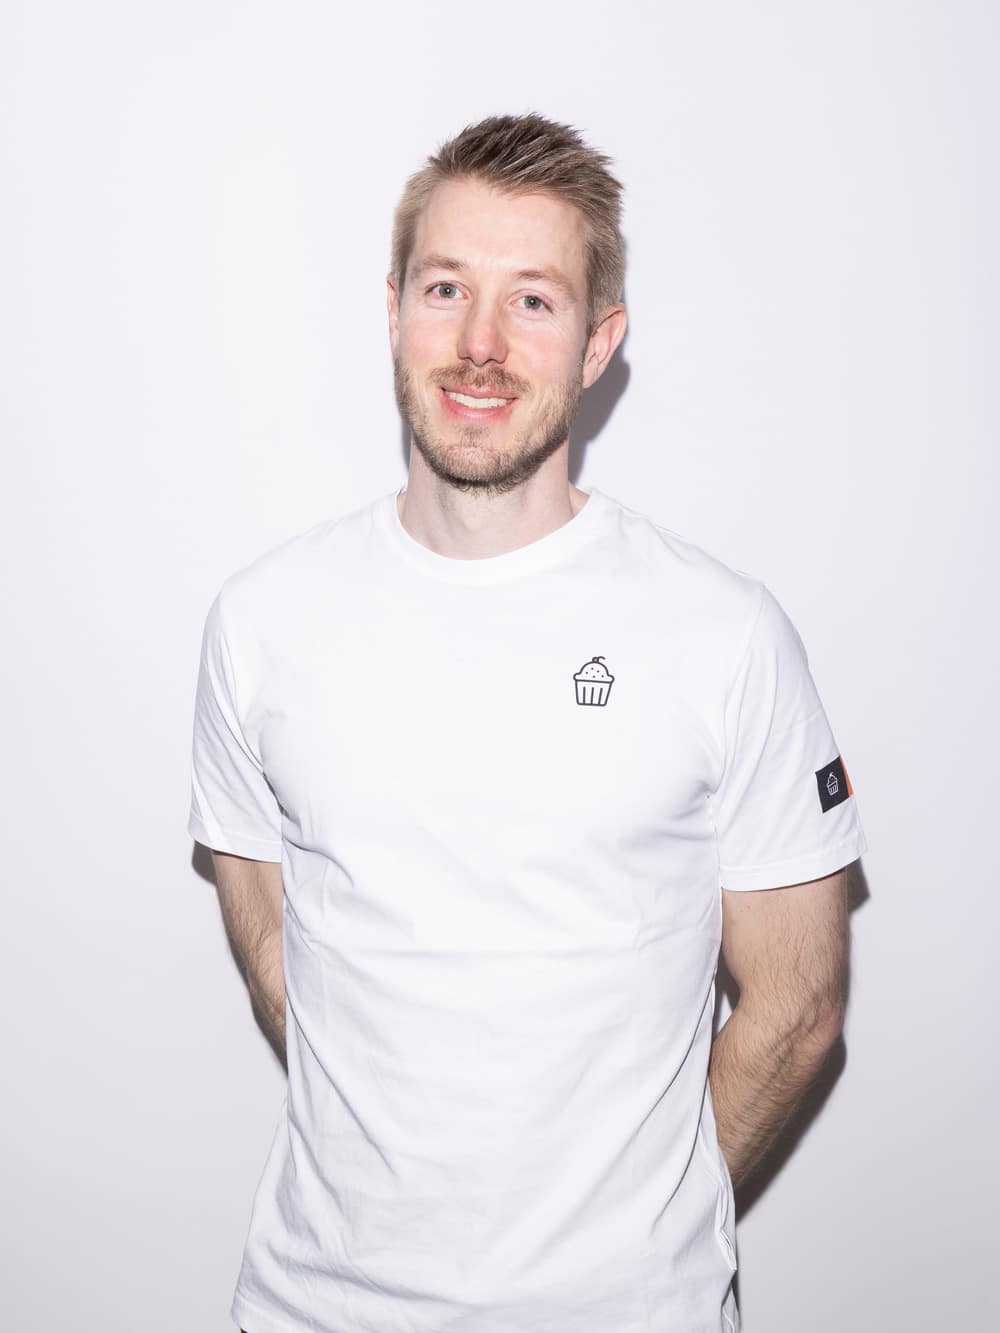 Michael Meier, Mann mit blonden kurzen Haaren mit weissem T-Shirt auf weissem Hintergrund